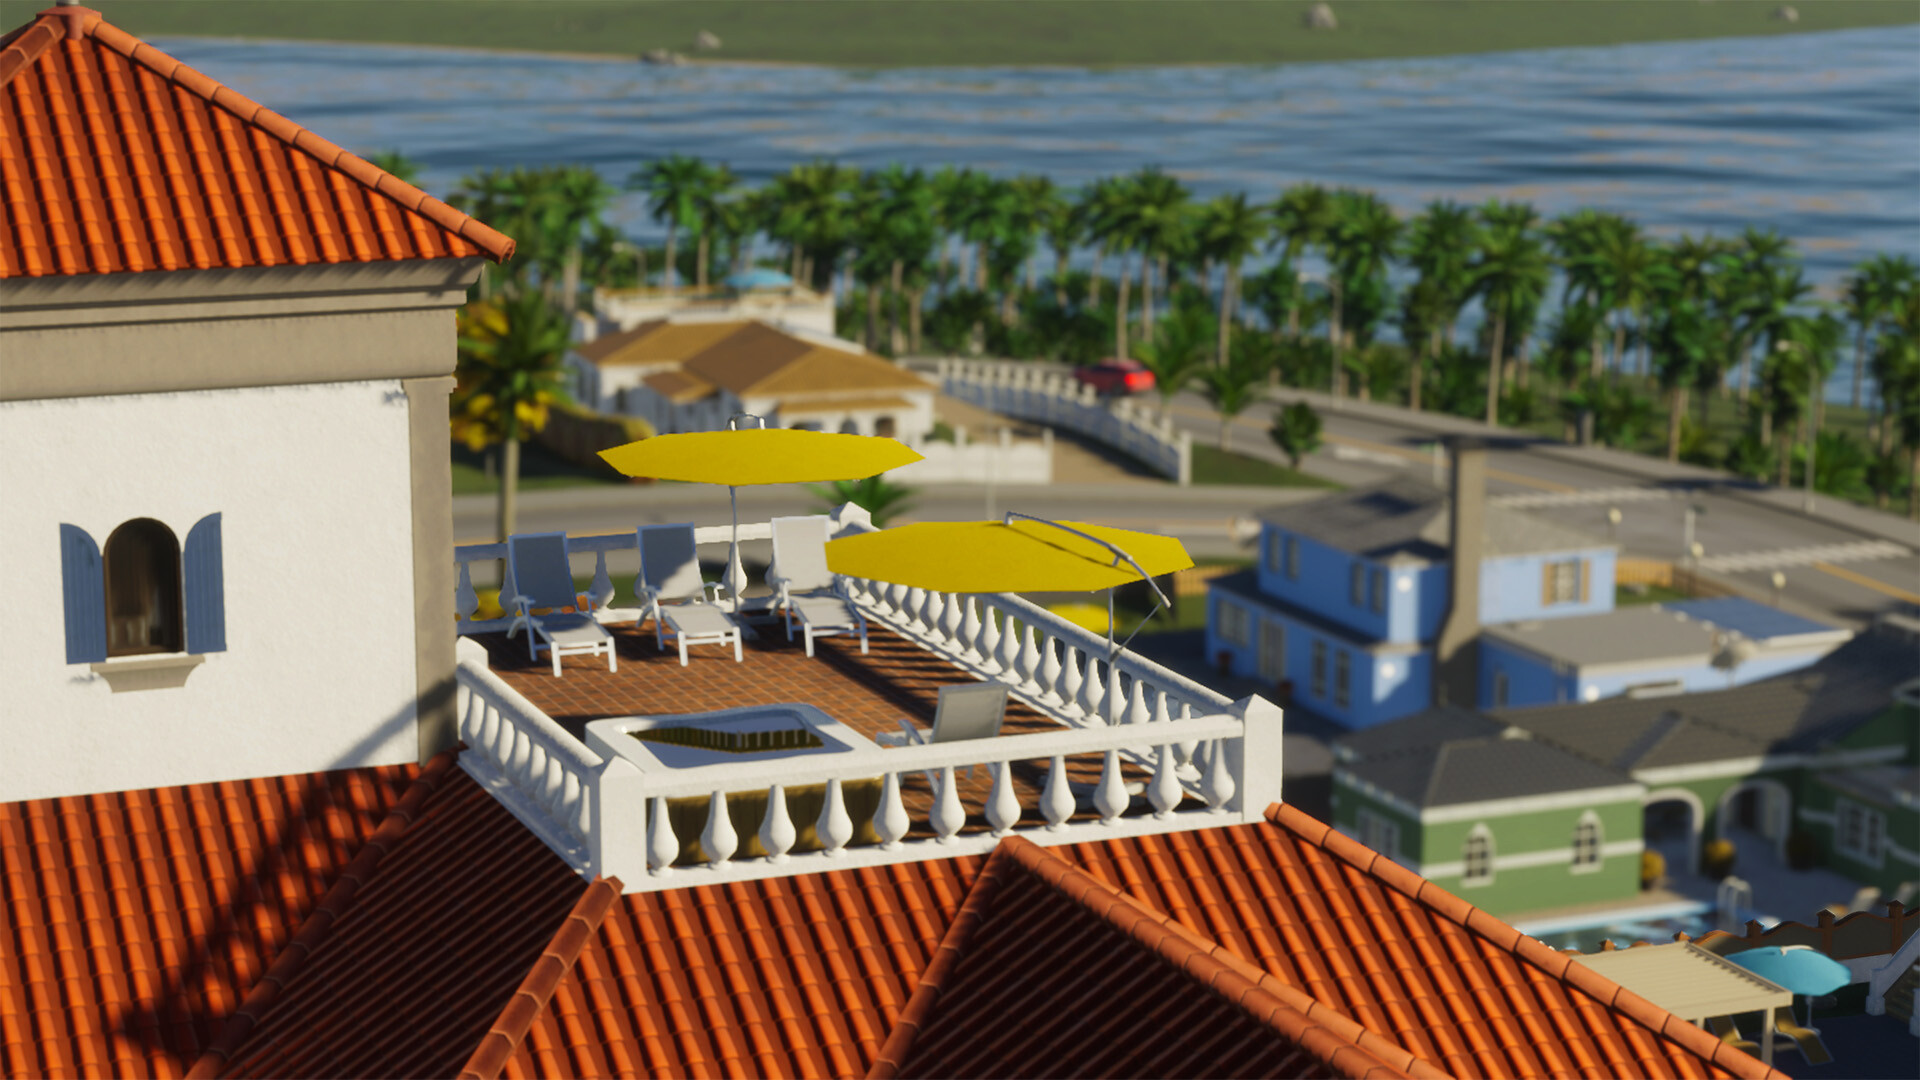 La strategia di pianificazione urbana Cities: Skylines 2 ha ricevuto un set di oggetti da spiaggia e strumenti di gioco per le modifiche